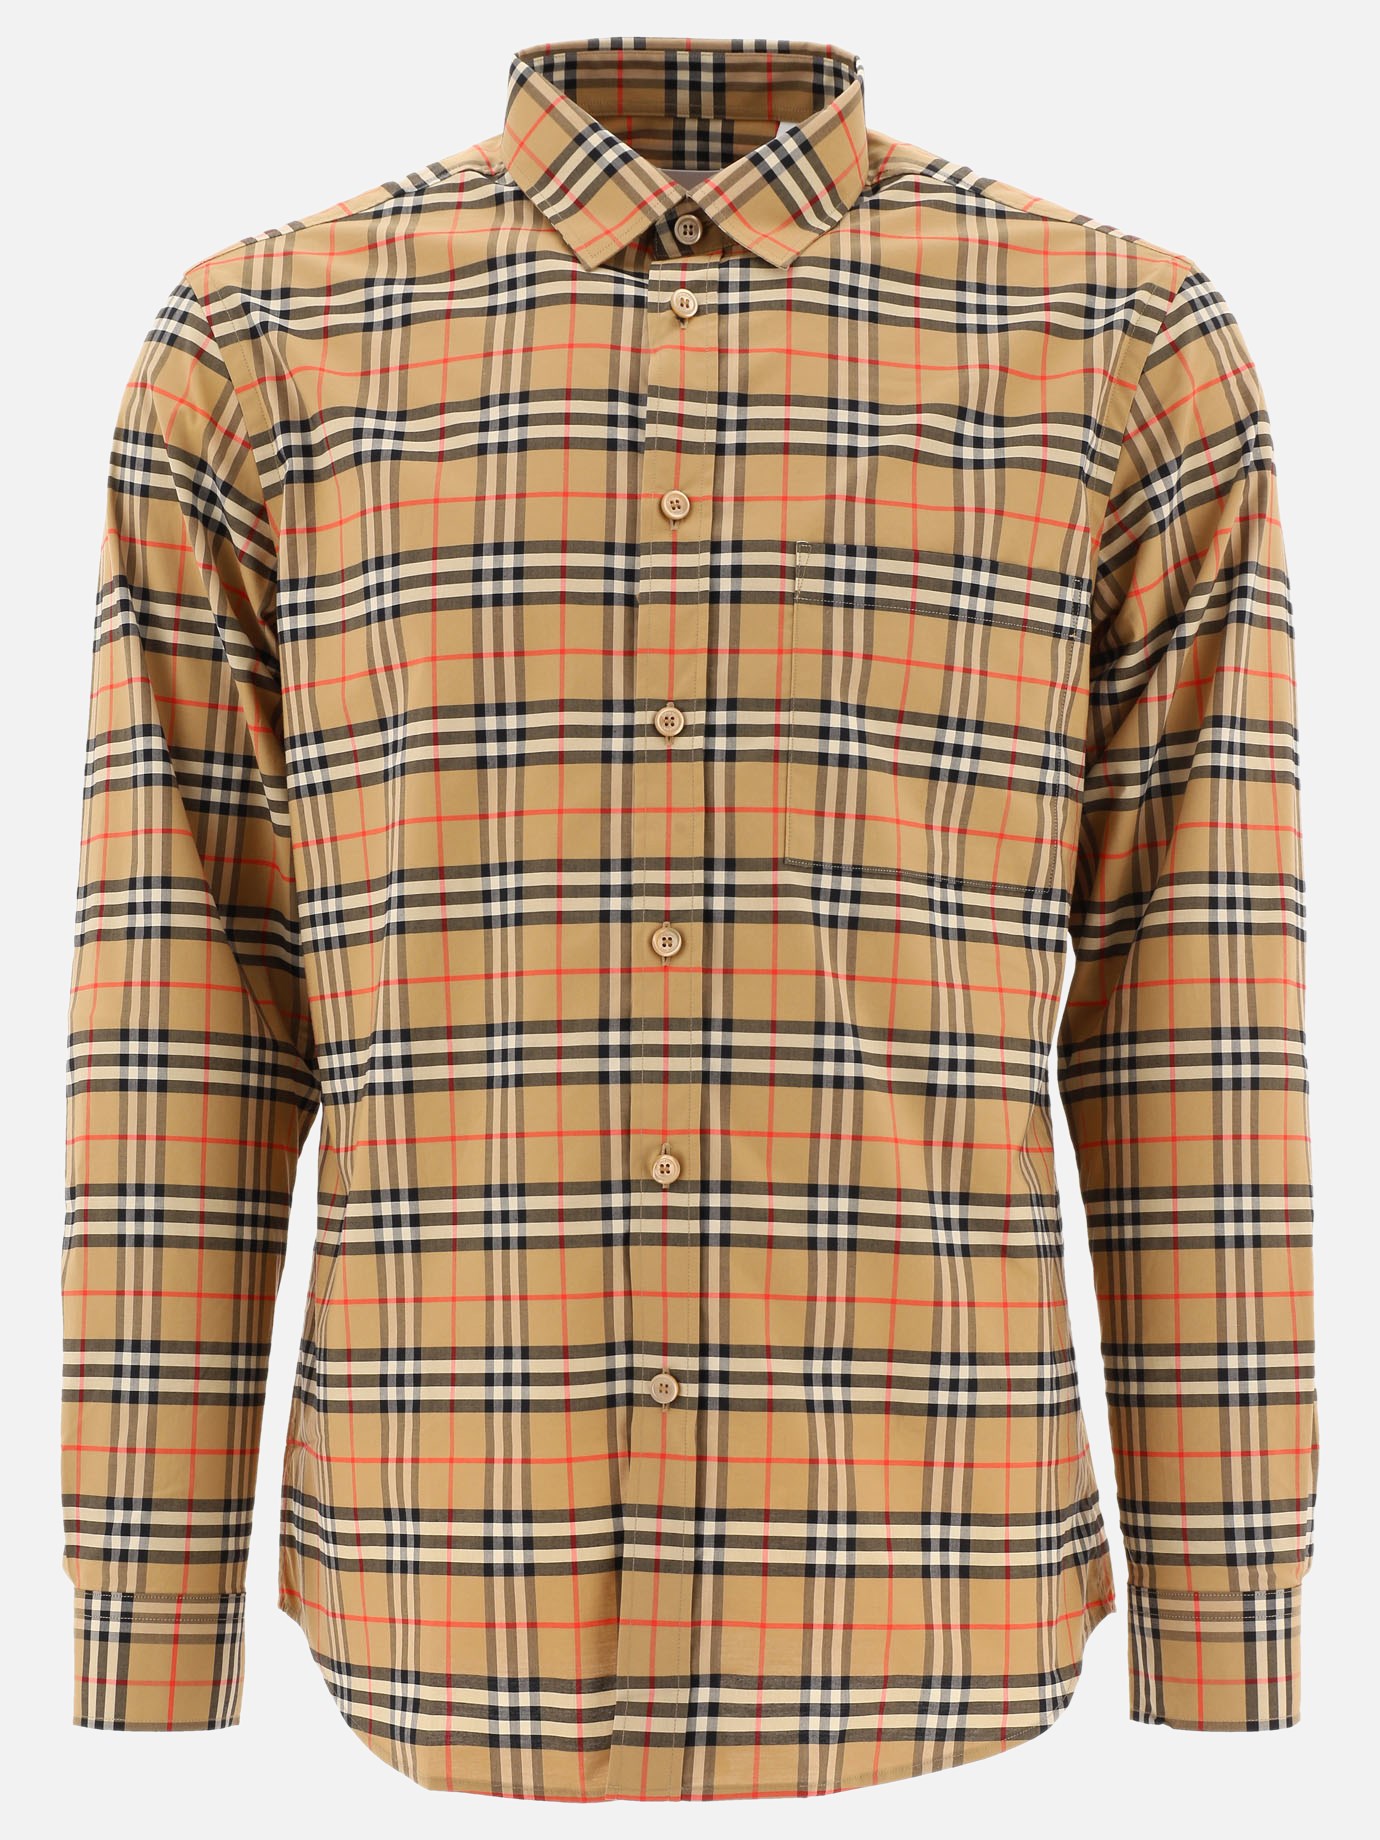  Vintage Check  shirtby Burberry - 0